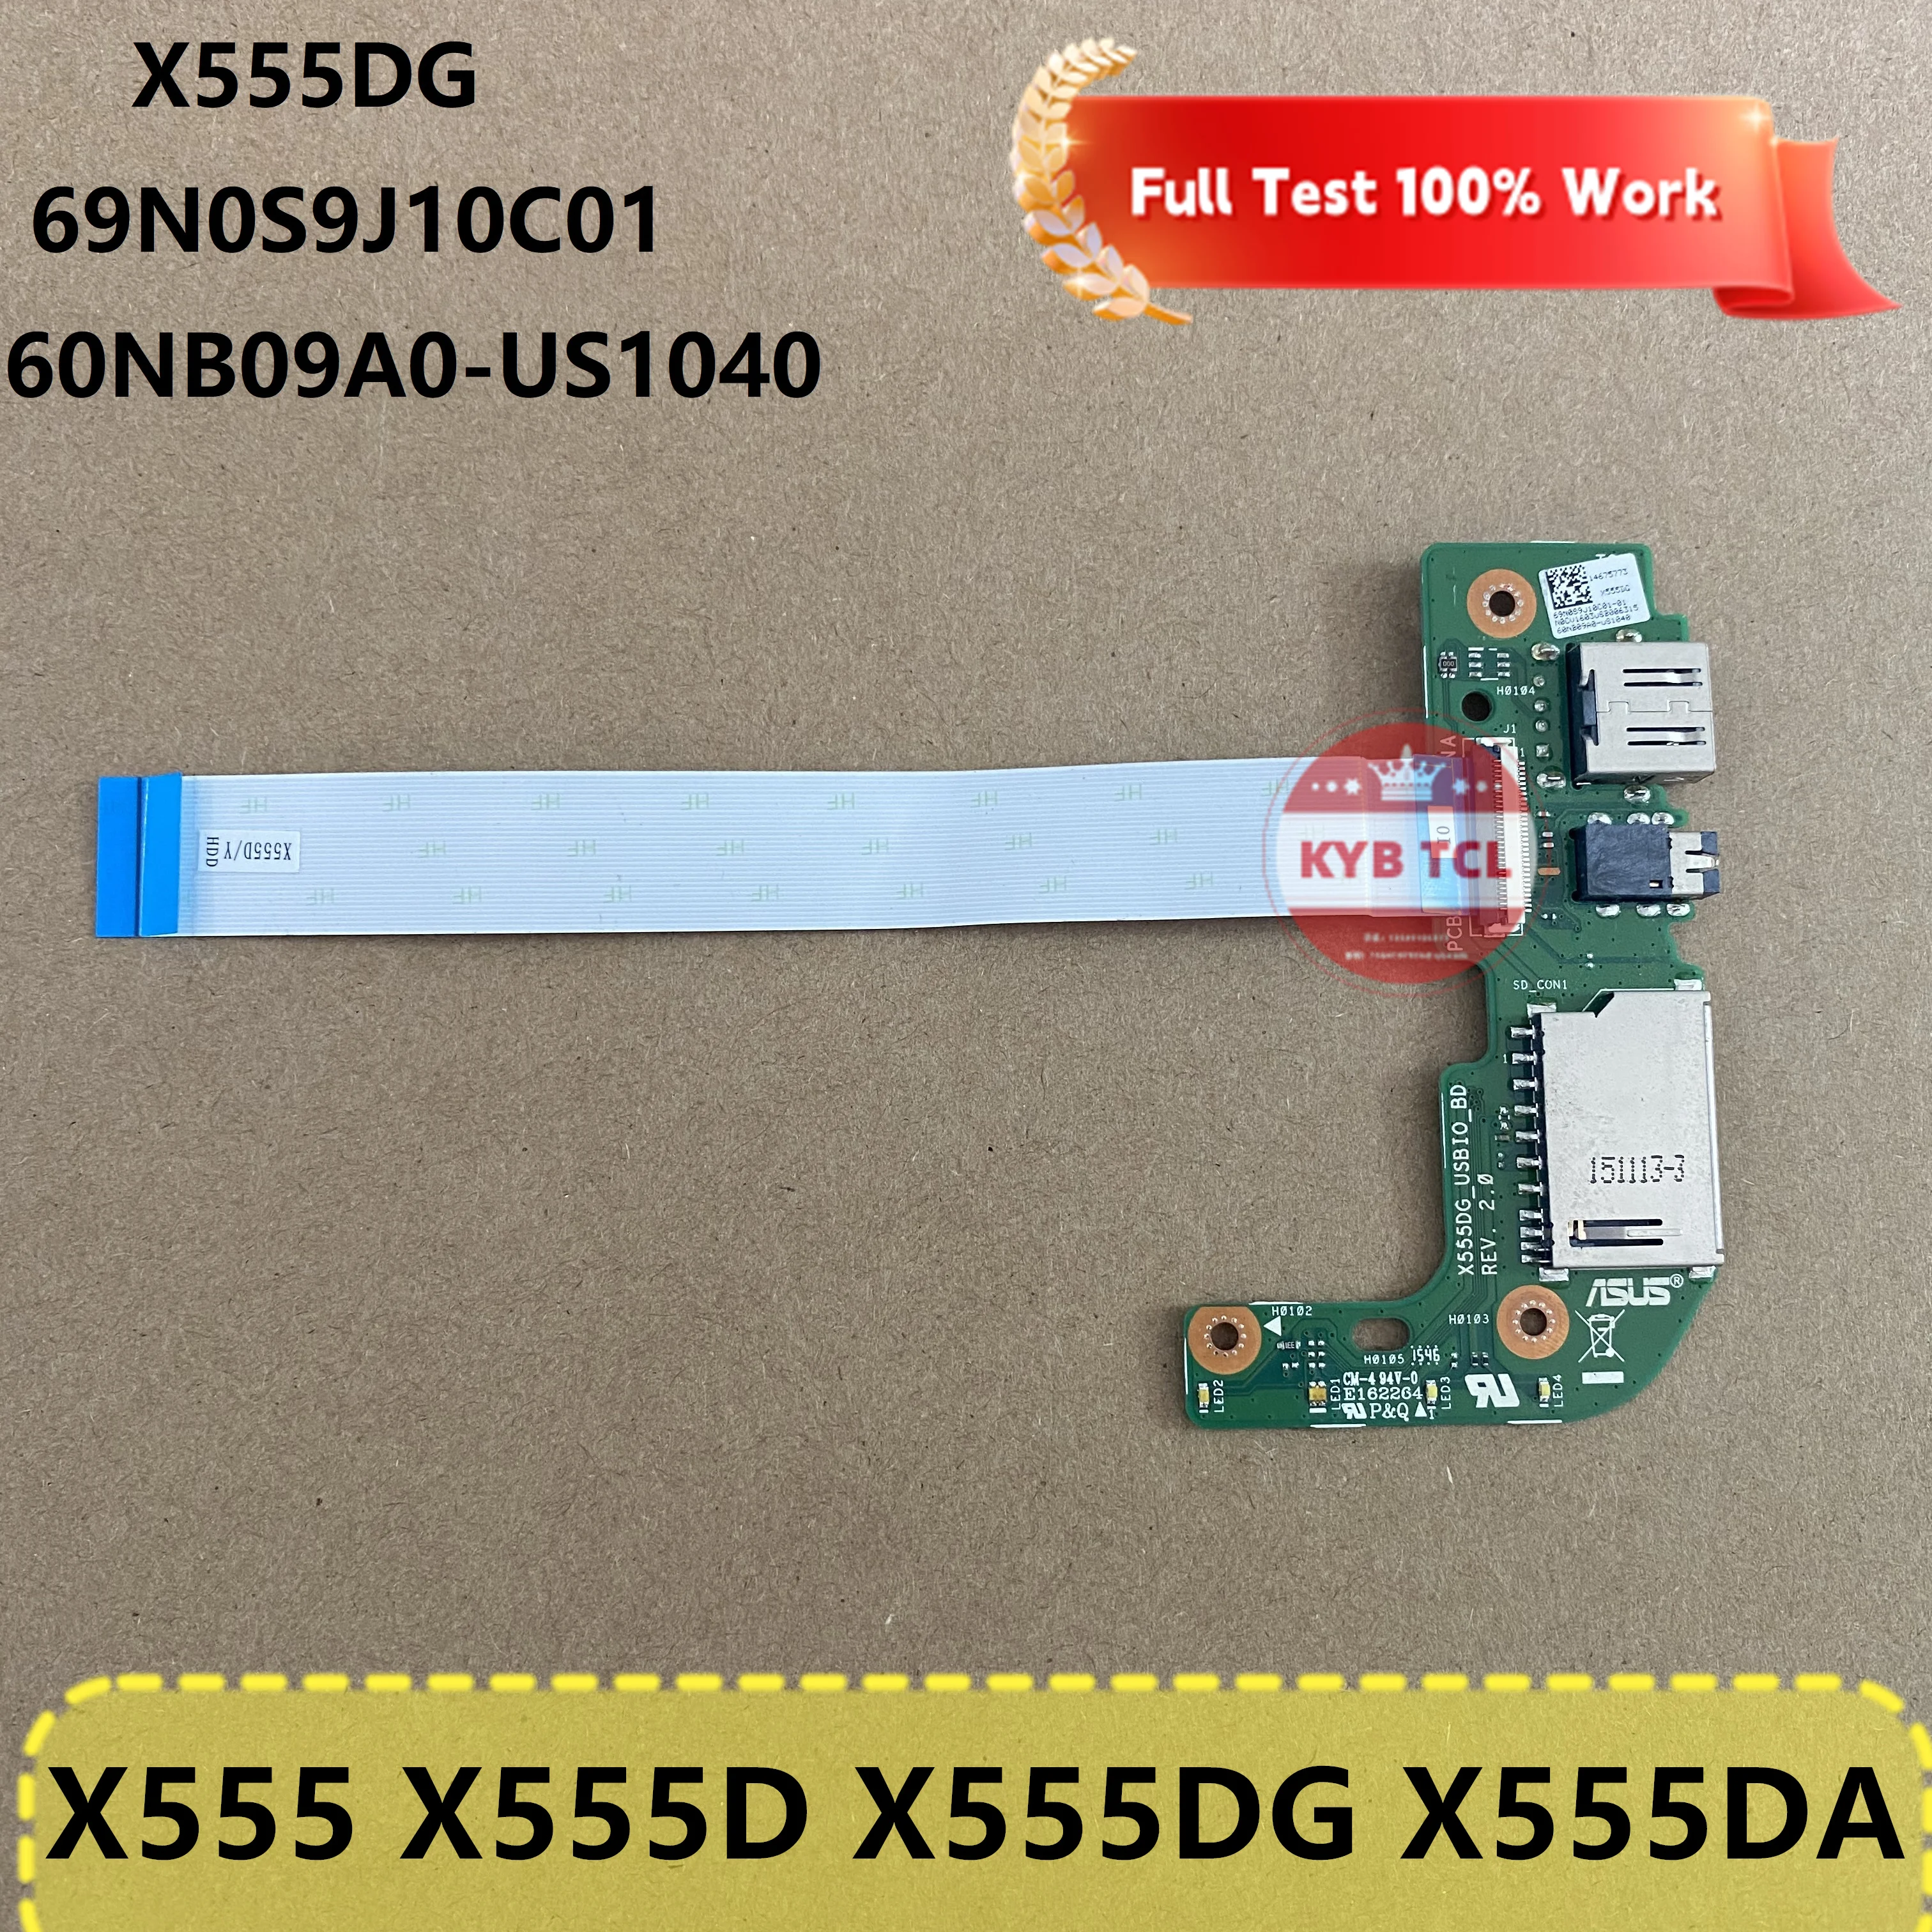 

Оригинальная USB плата ввода-вывода для ноутбука или кабель для ноутбука Asus X555 X555D X555DG X555DA 60NB09A0-US1040 69N0S9J10C01 REV 2,0